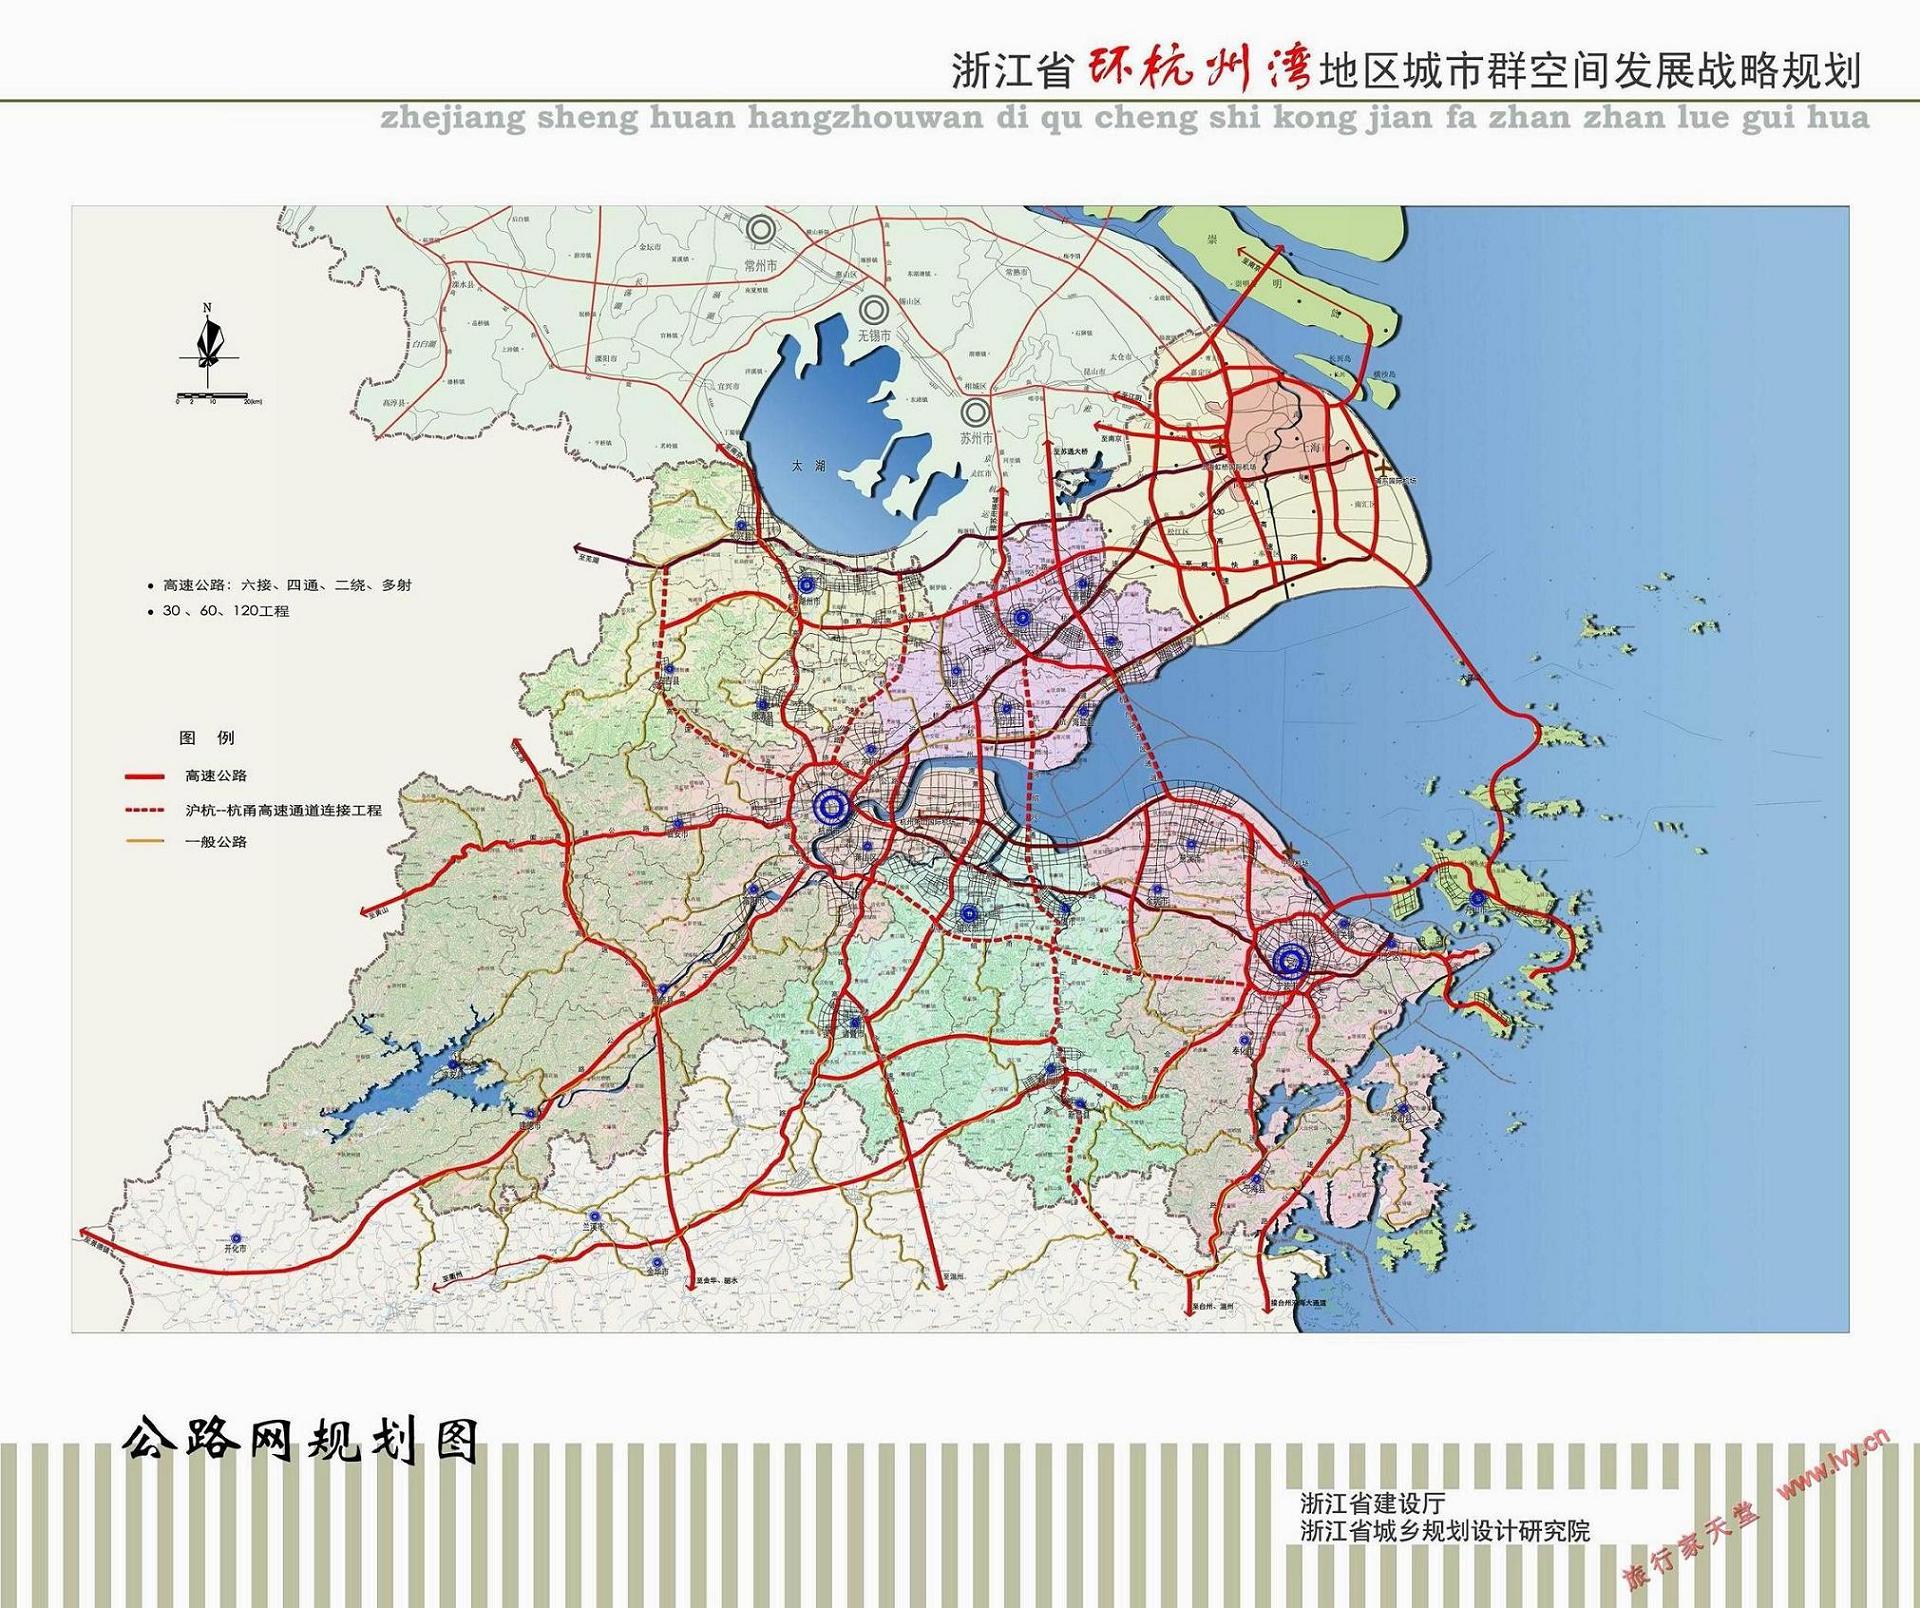 浙江省钱塘江两岸交通规划图,有规划新建的杭绍甬高速公路